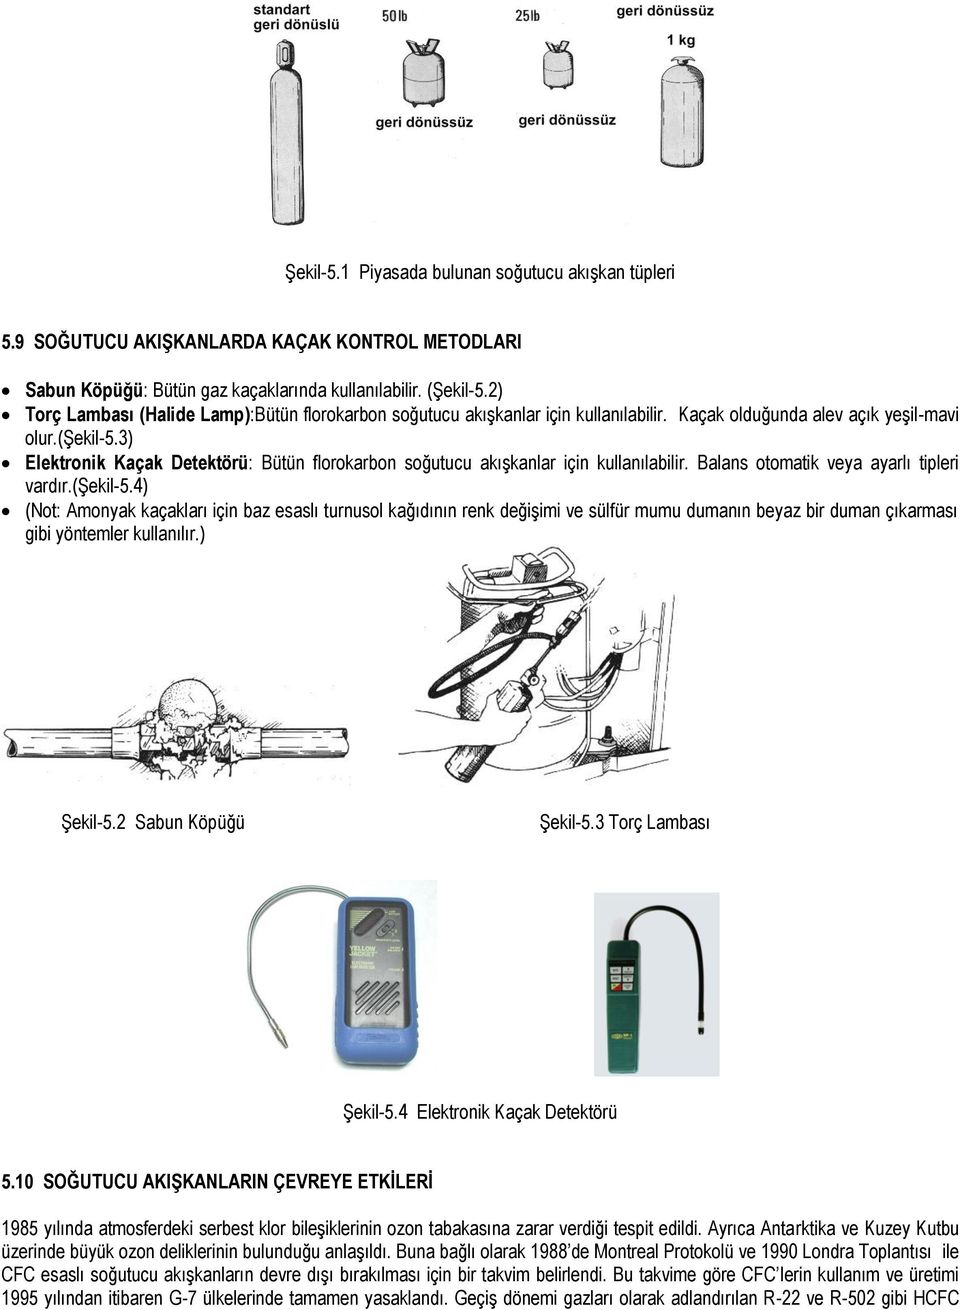 3) Elektronik Kaçak Detektörü: Bütün florokarbon soğutucu akışkanlar için kullanılabilir. Balans otomatik veya ayarlı tipleri vardır.(şekil-5.